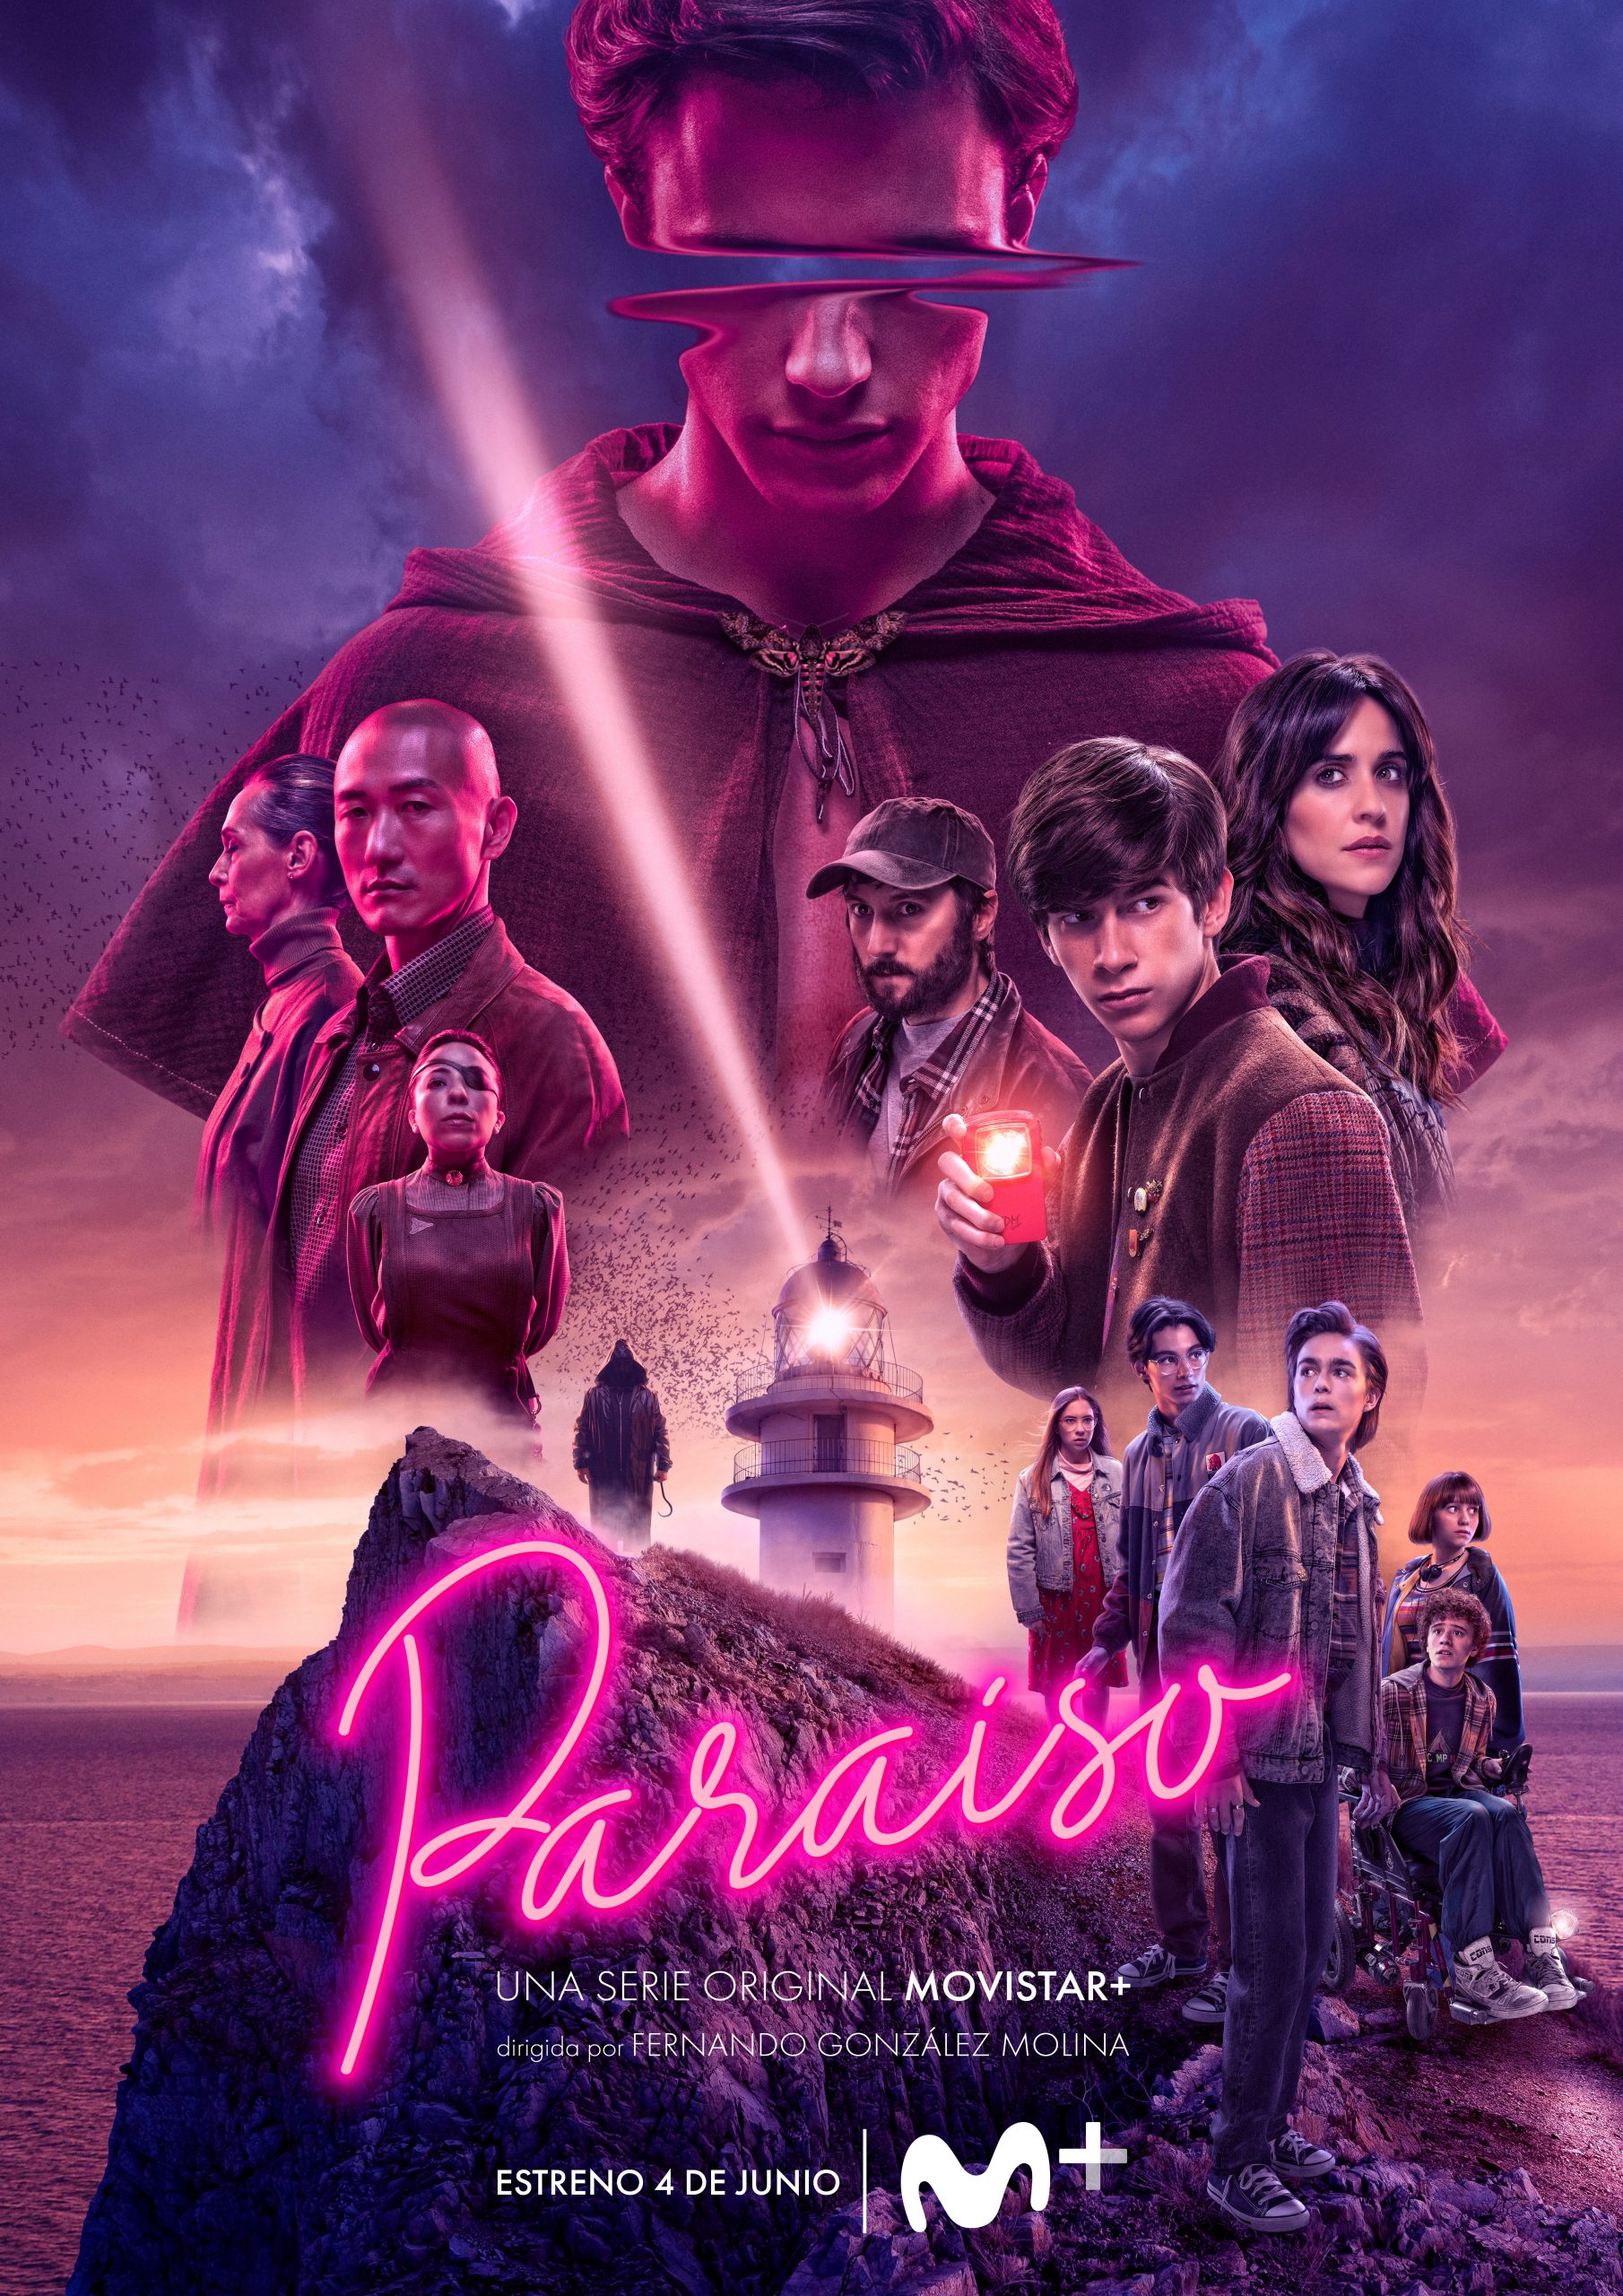 'Paraíso', la nueva serie original Movistar+ presenta nuevos carteles